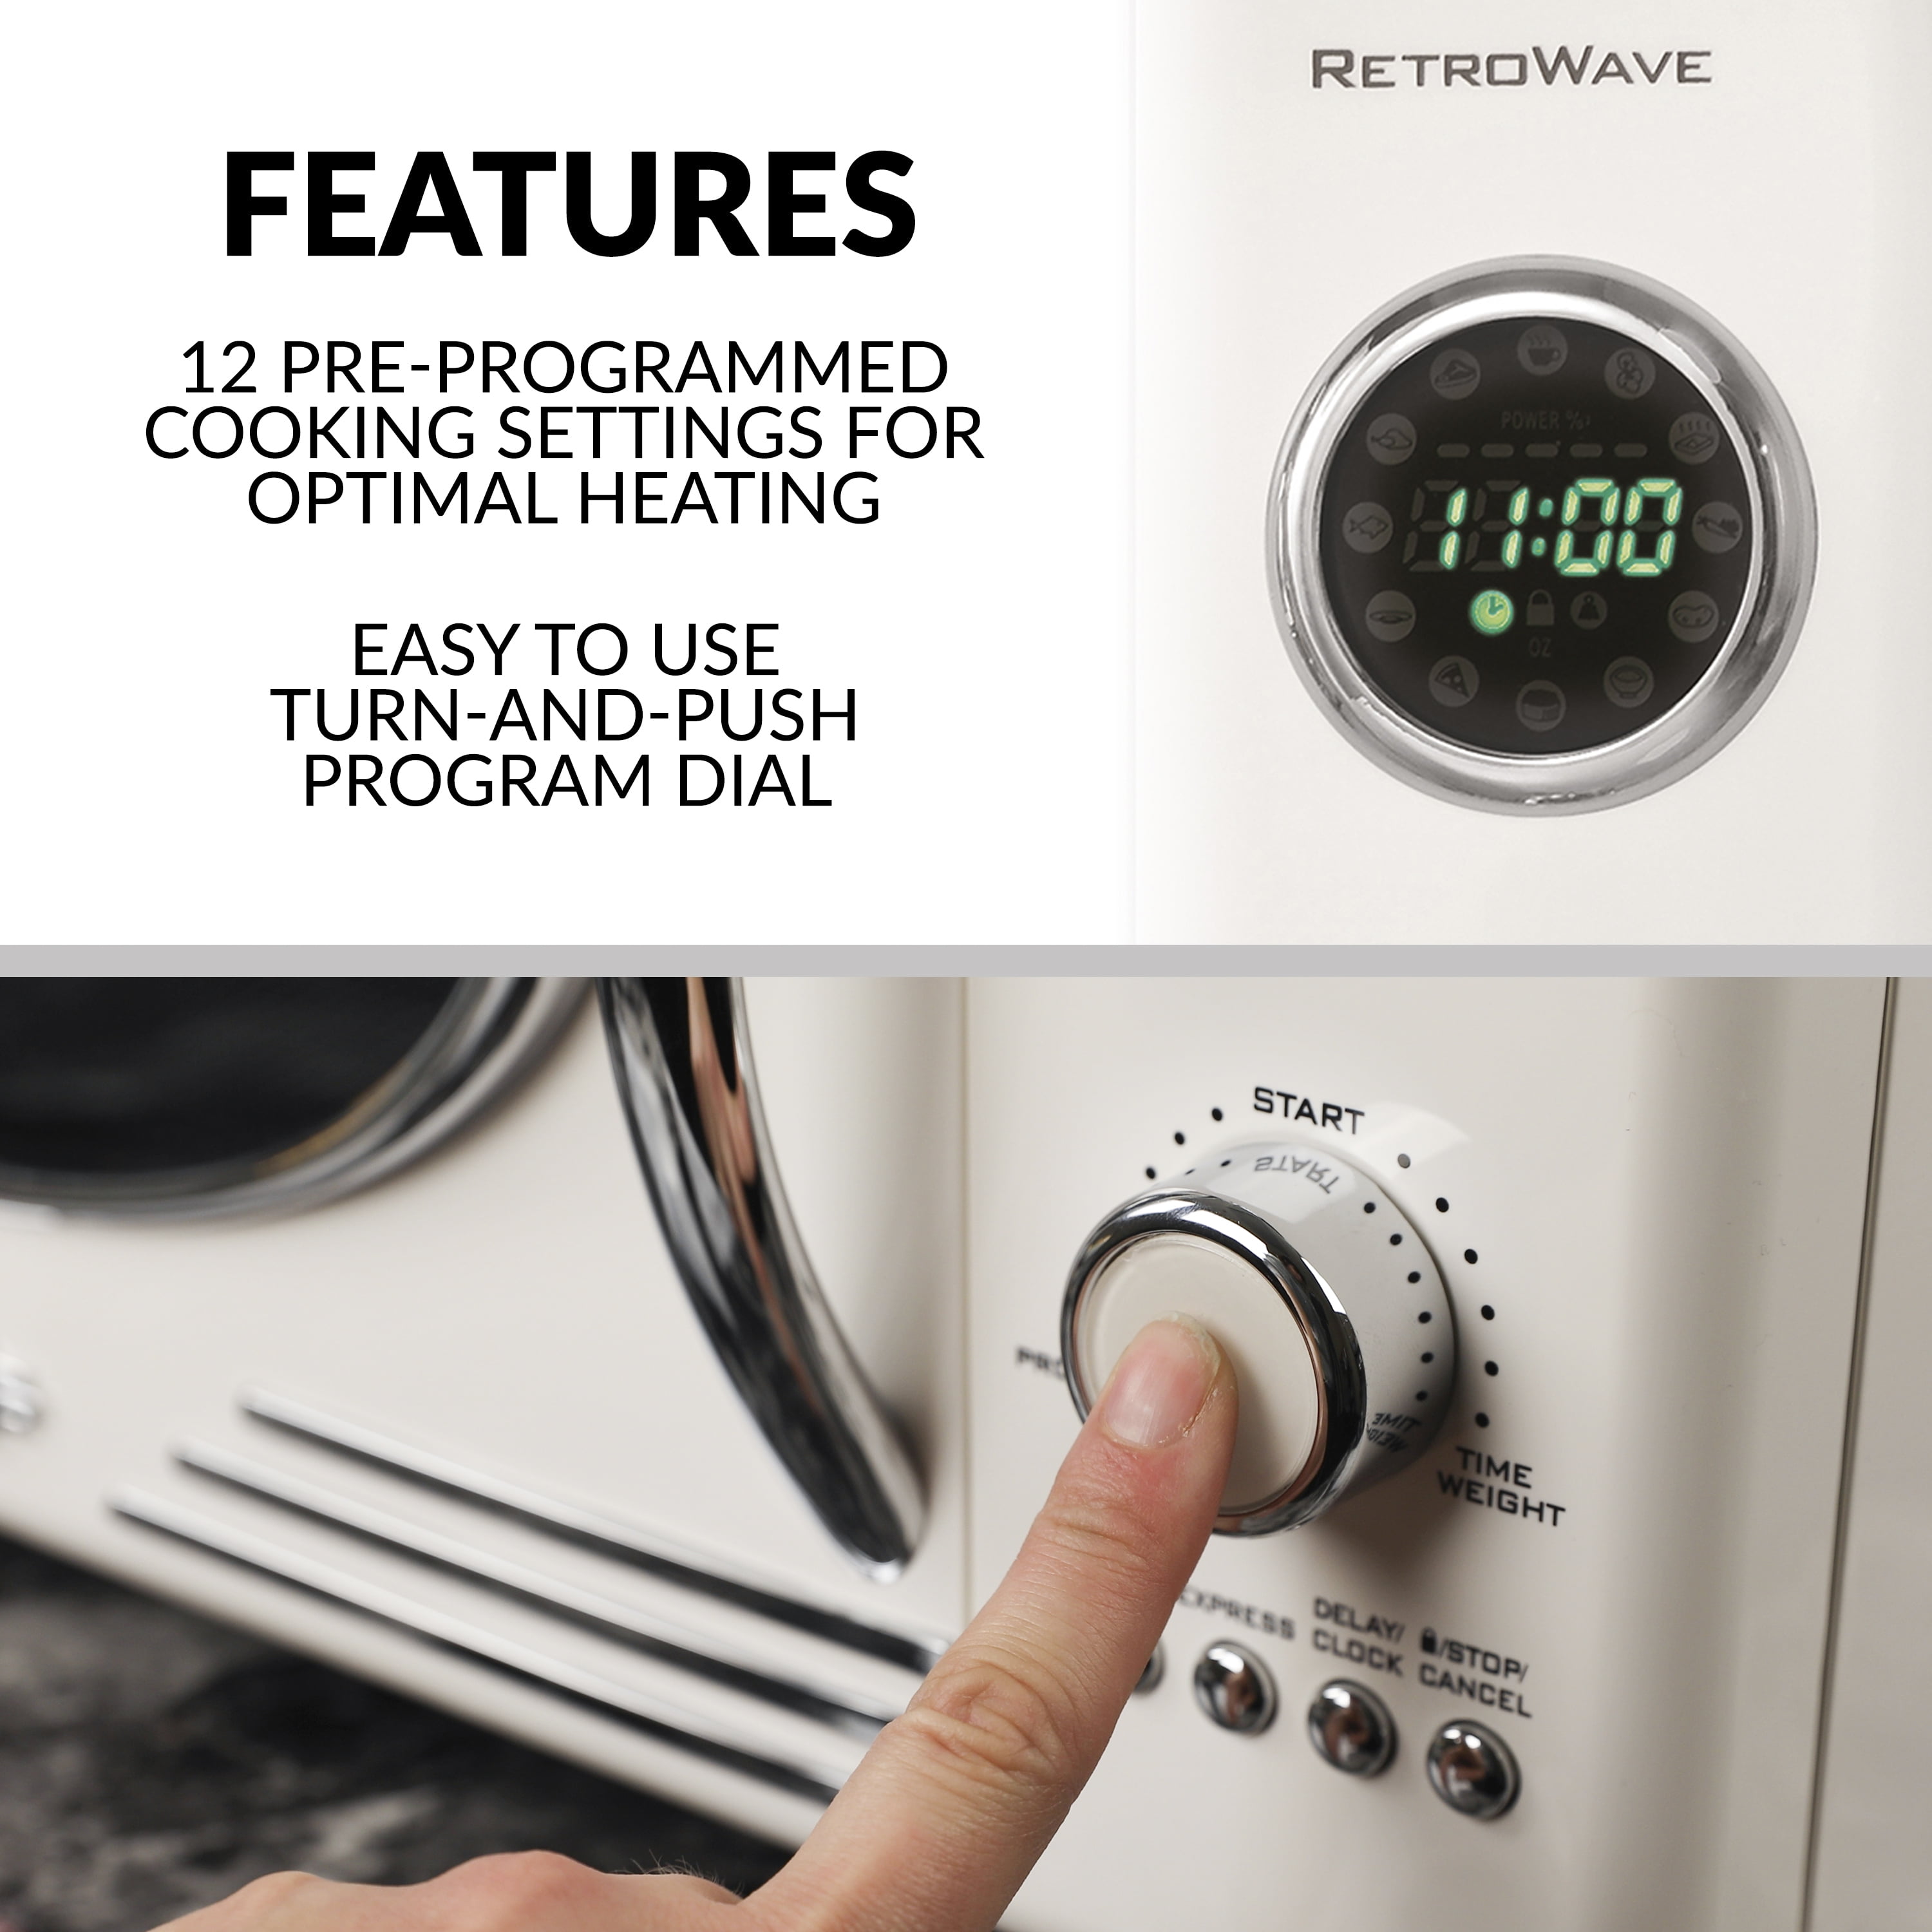 Nostalgia NRMO9RR Retro Microwave Oven, 0.9 Cu.Ft. Retro Red